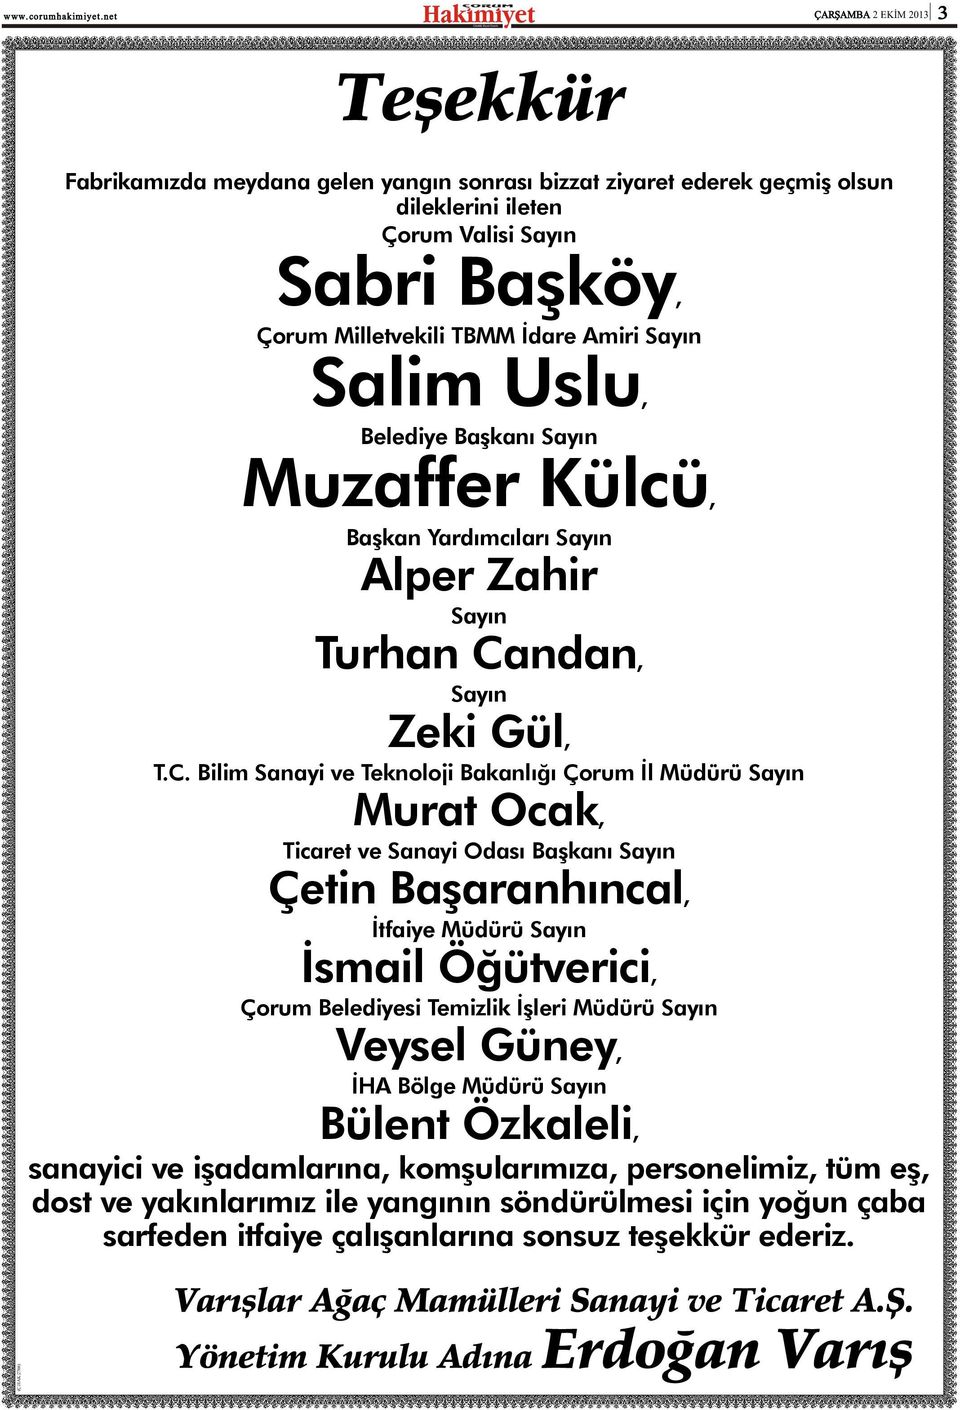 ndan, Sayýn Zeki Gül, T.C.